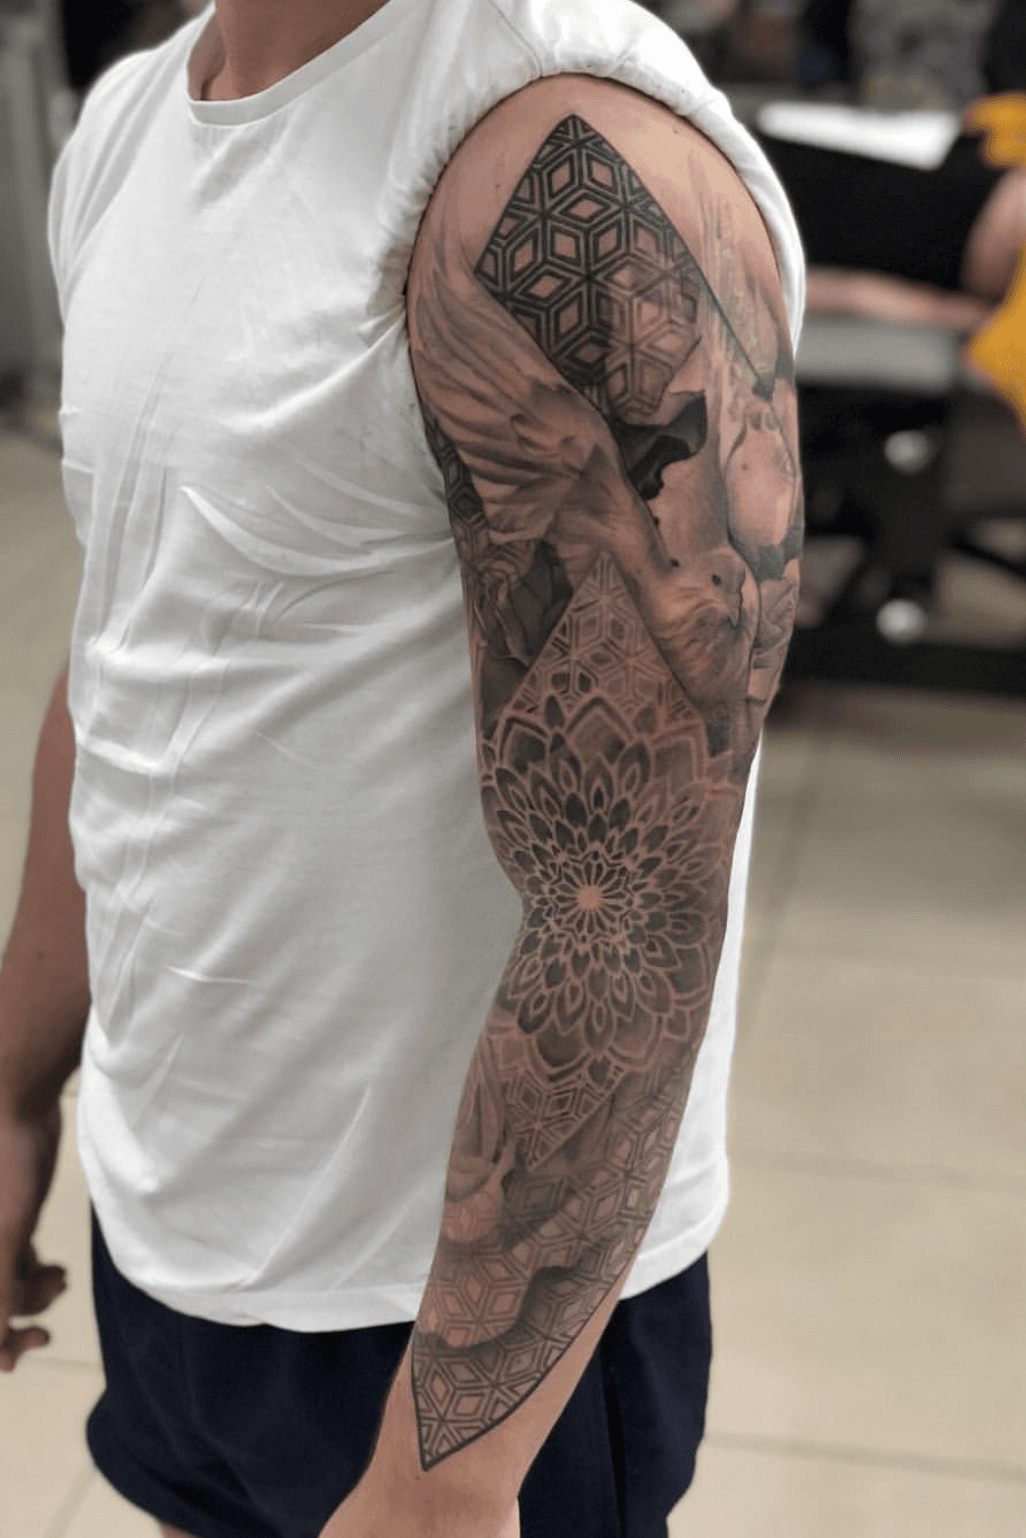 10 Best Gucci tattoo ideas  tattoos for guys sleeve tattoos gucci tattoo